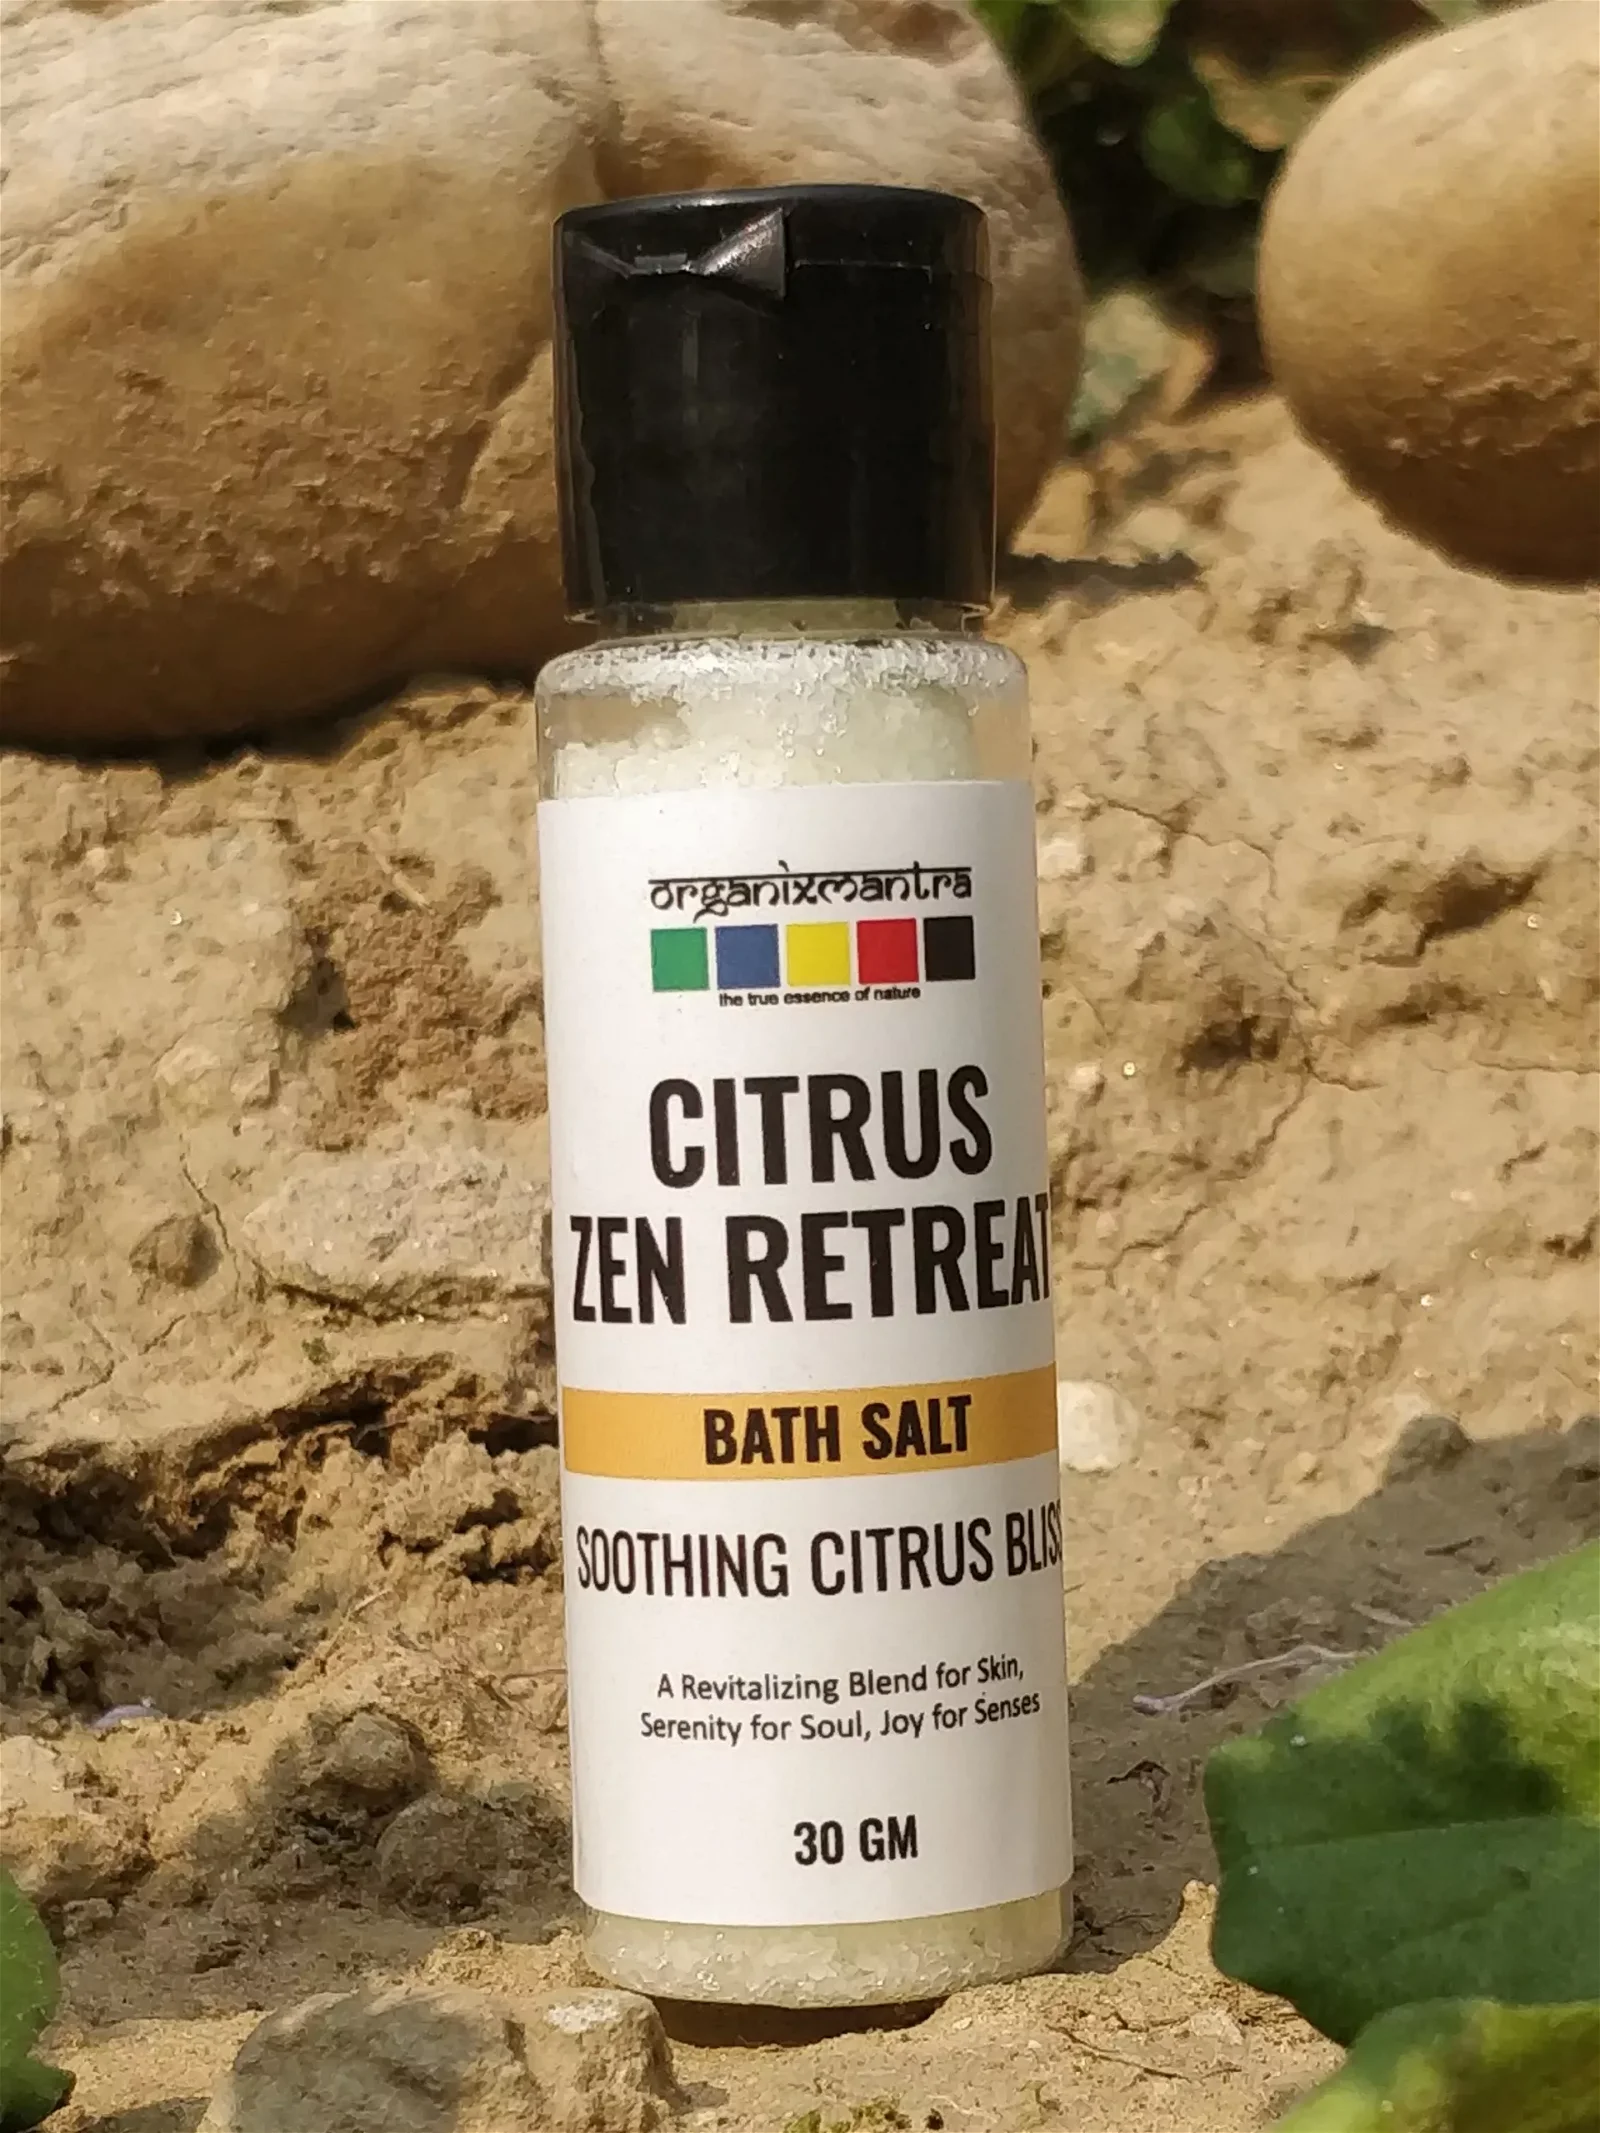 citrus zen retreat bath salt 30g edited 1 scaled